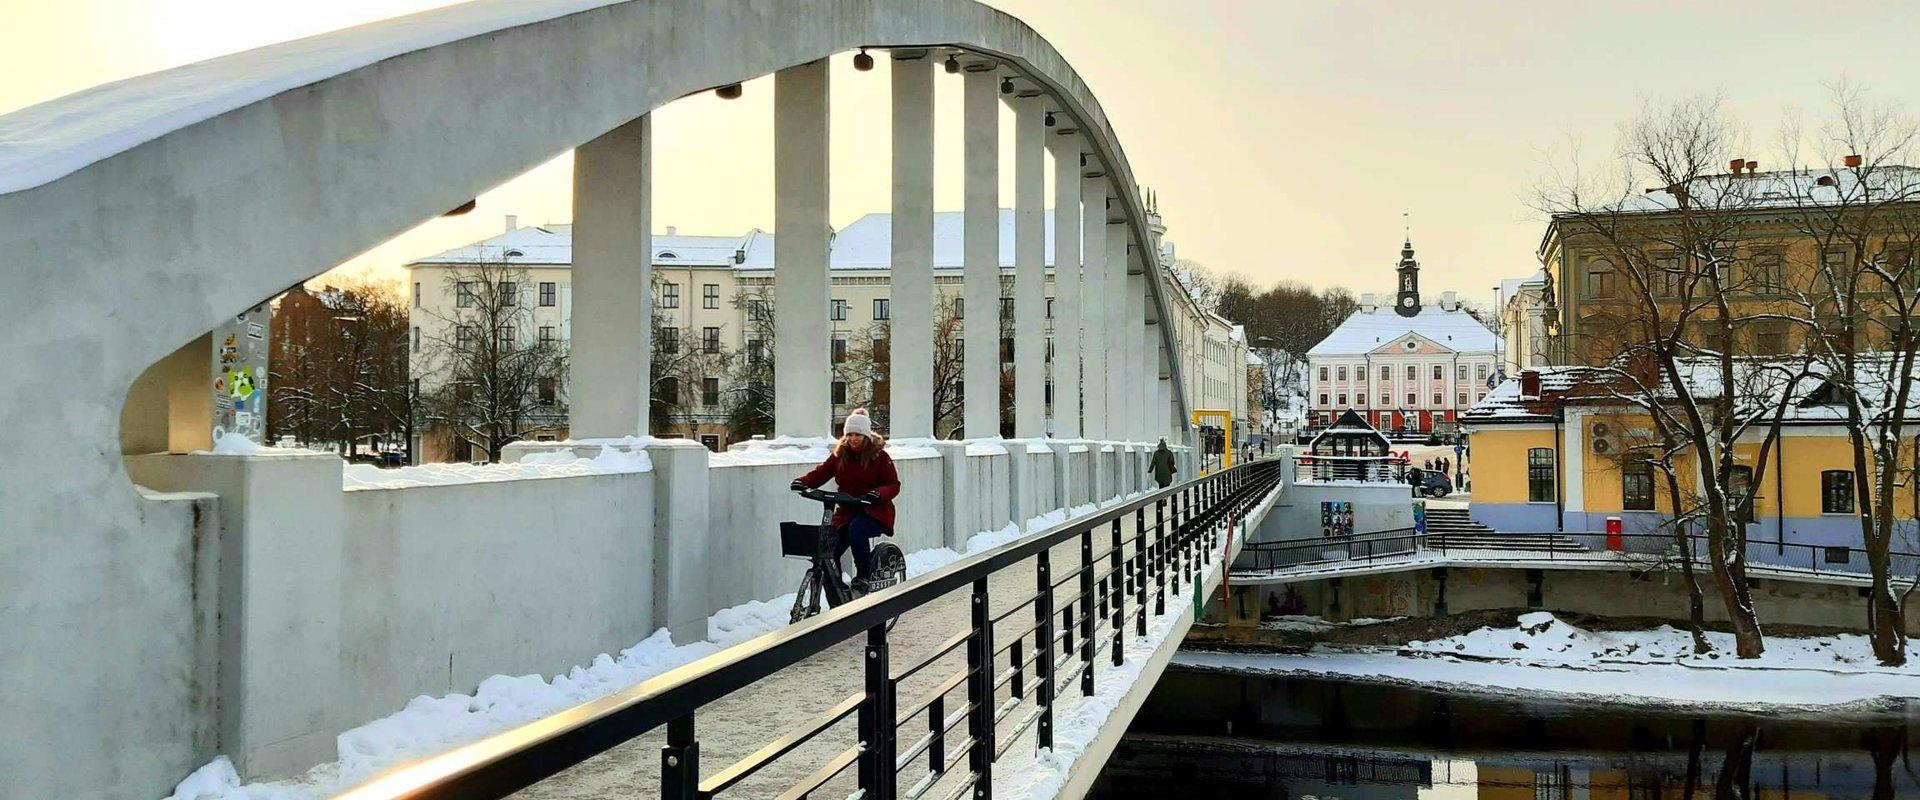 Giidiga jalutuskäik Tartu vanalinnas - Kaarsild talvel